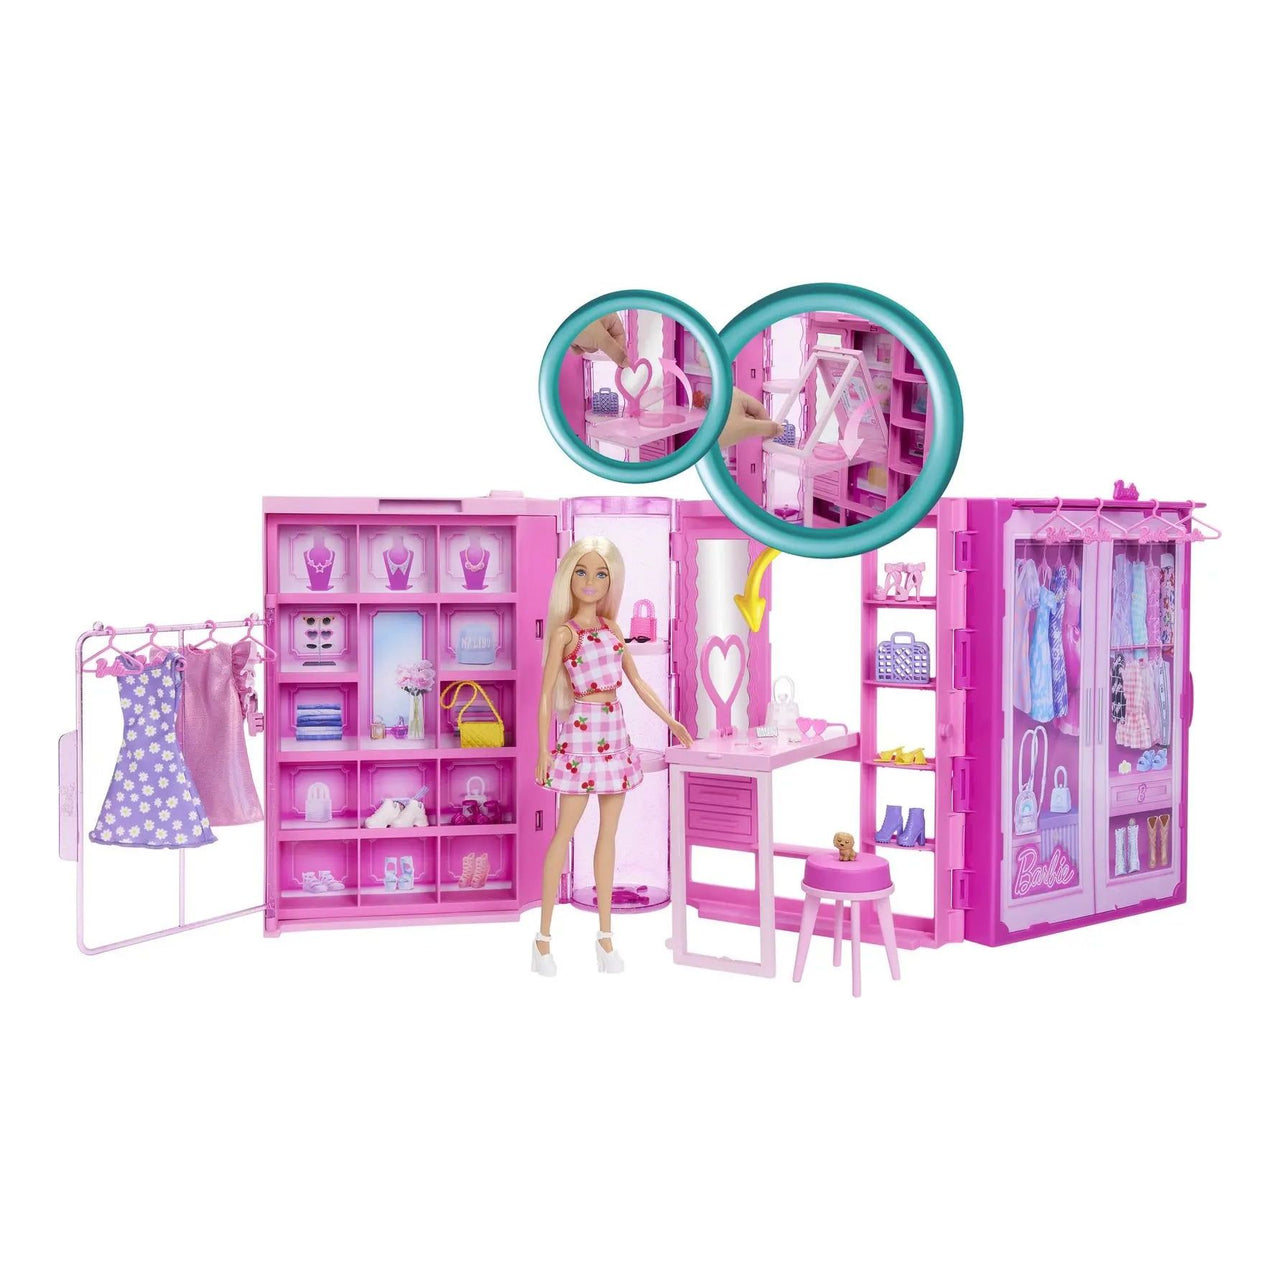 Barbie Dream Closet with Doll Barbie